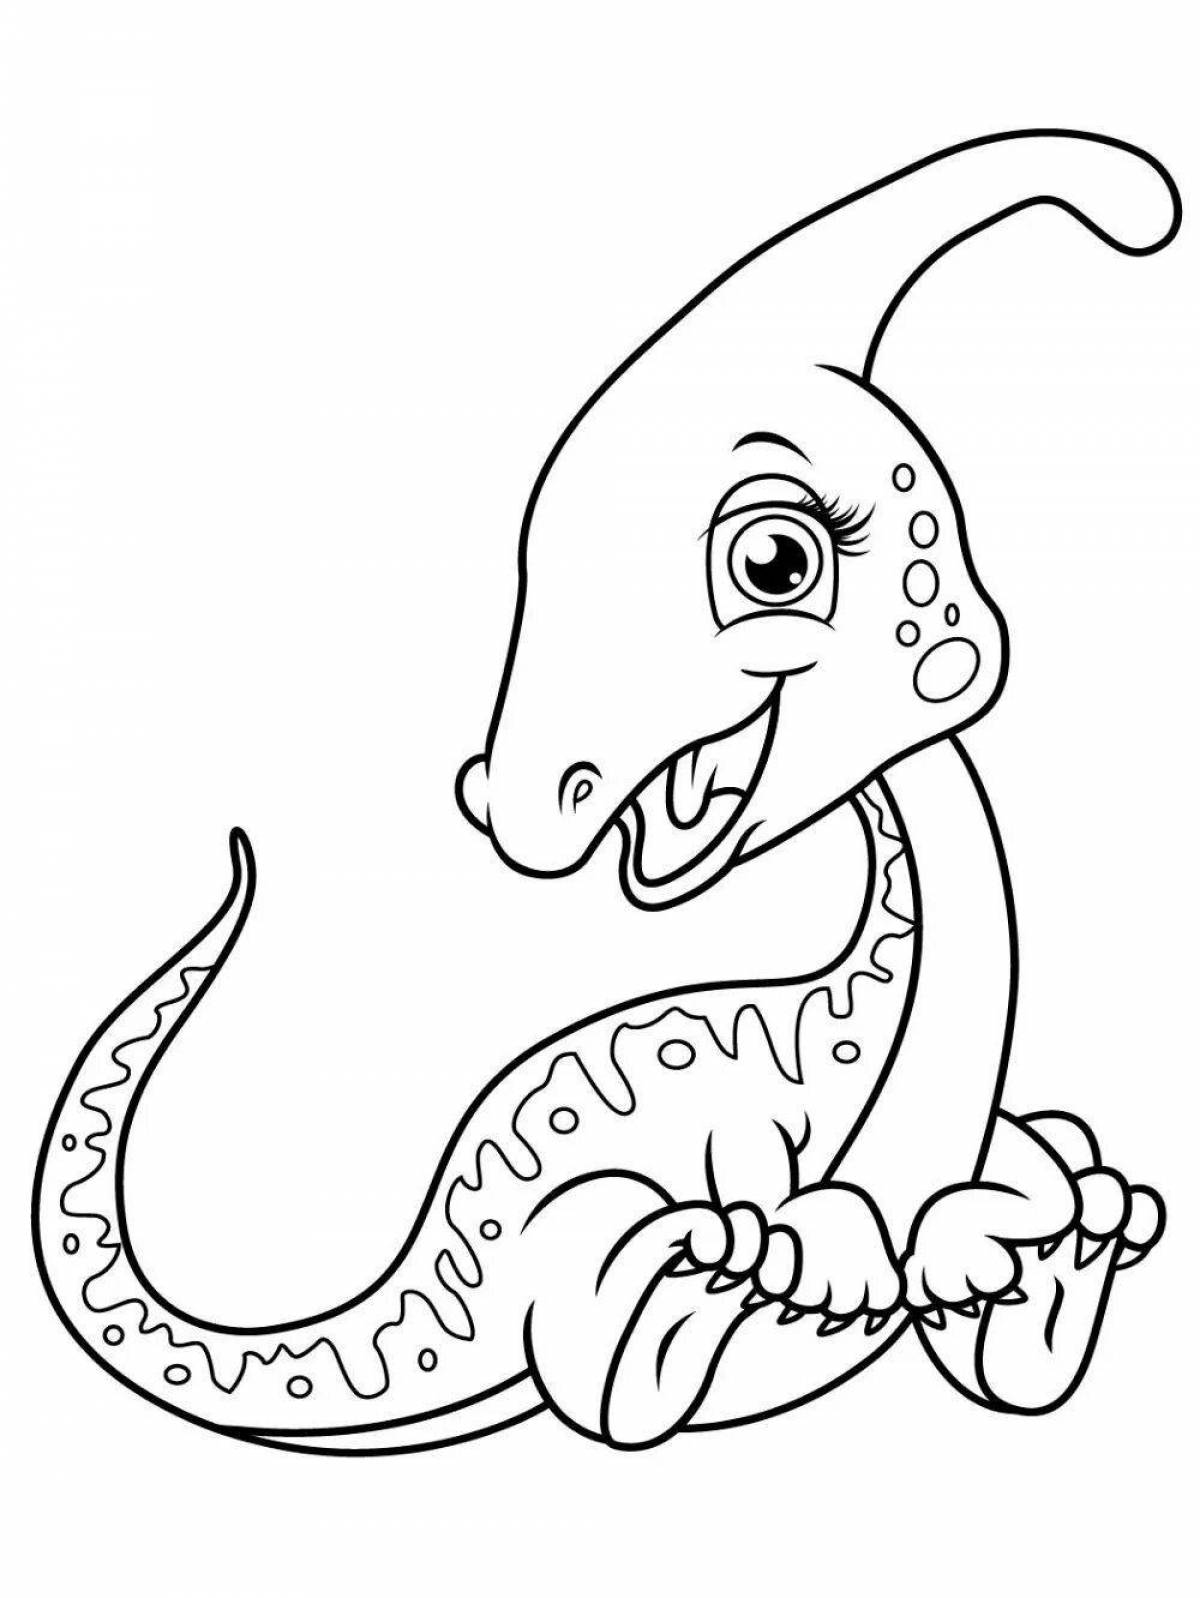 Раскраска причудливый мультяшный динозавр